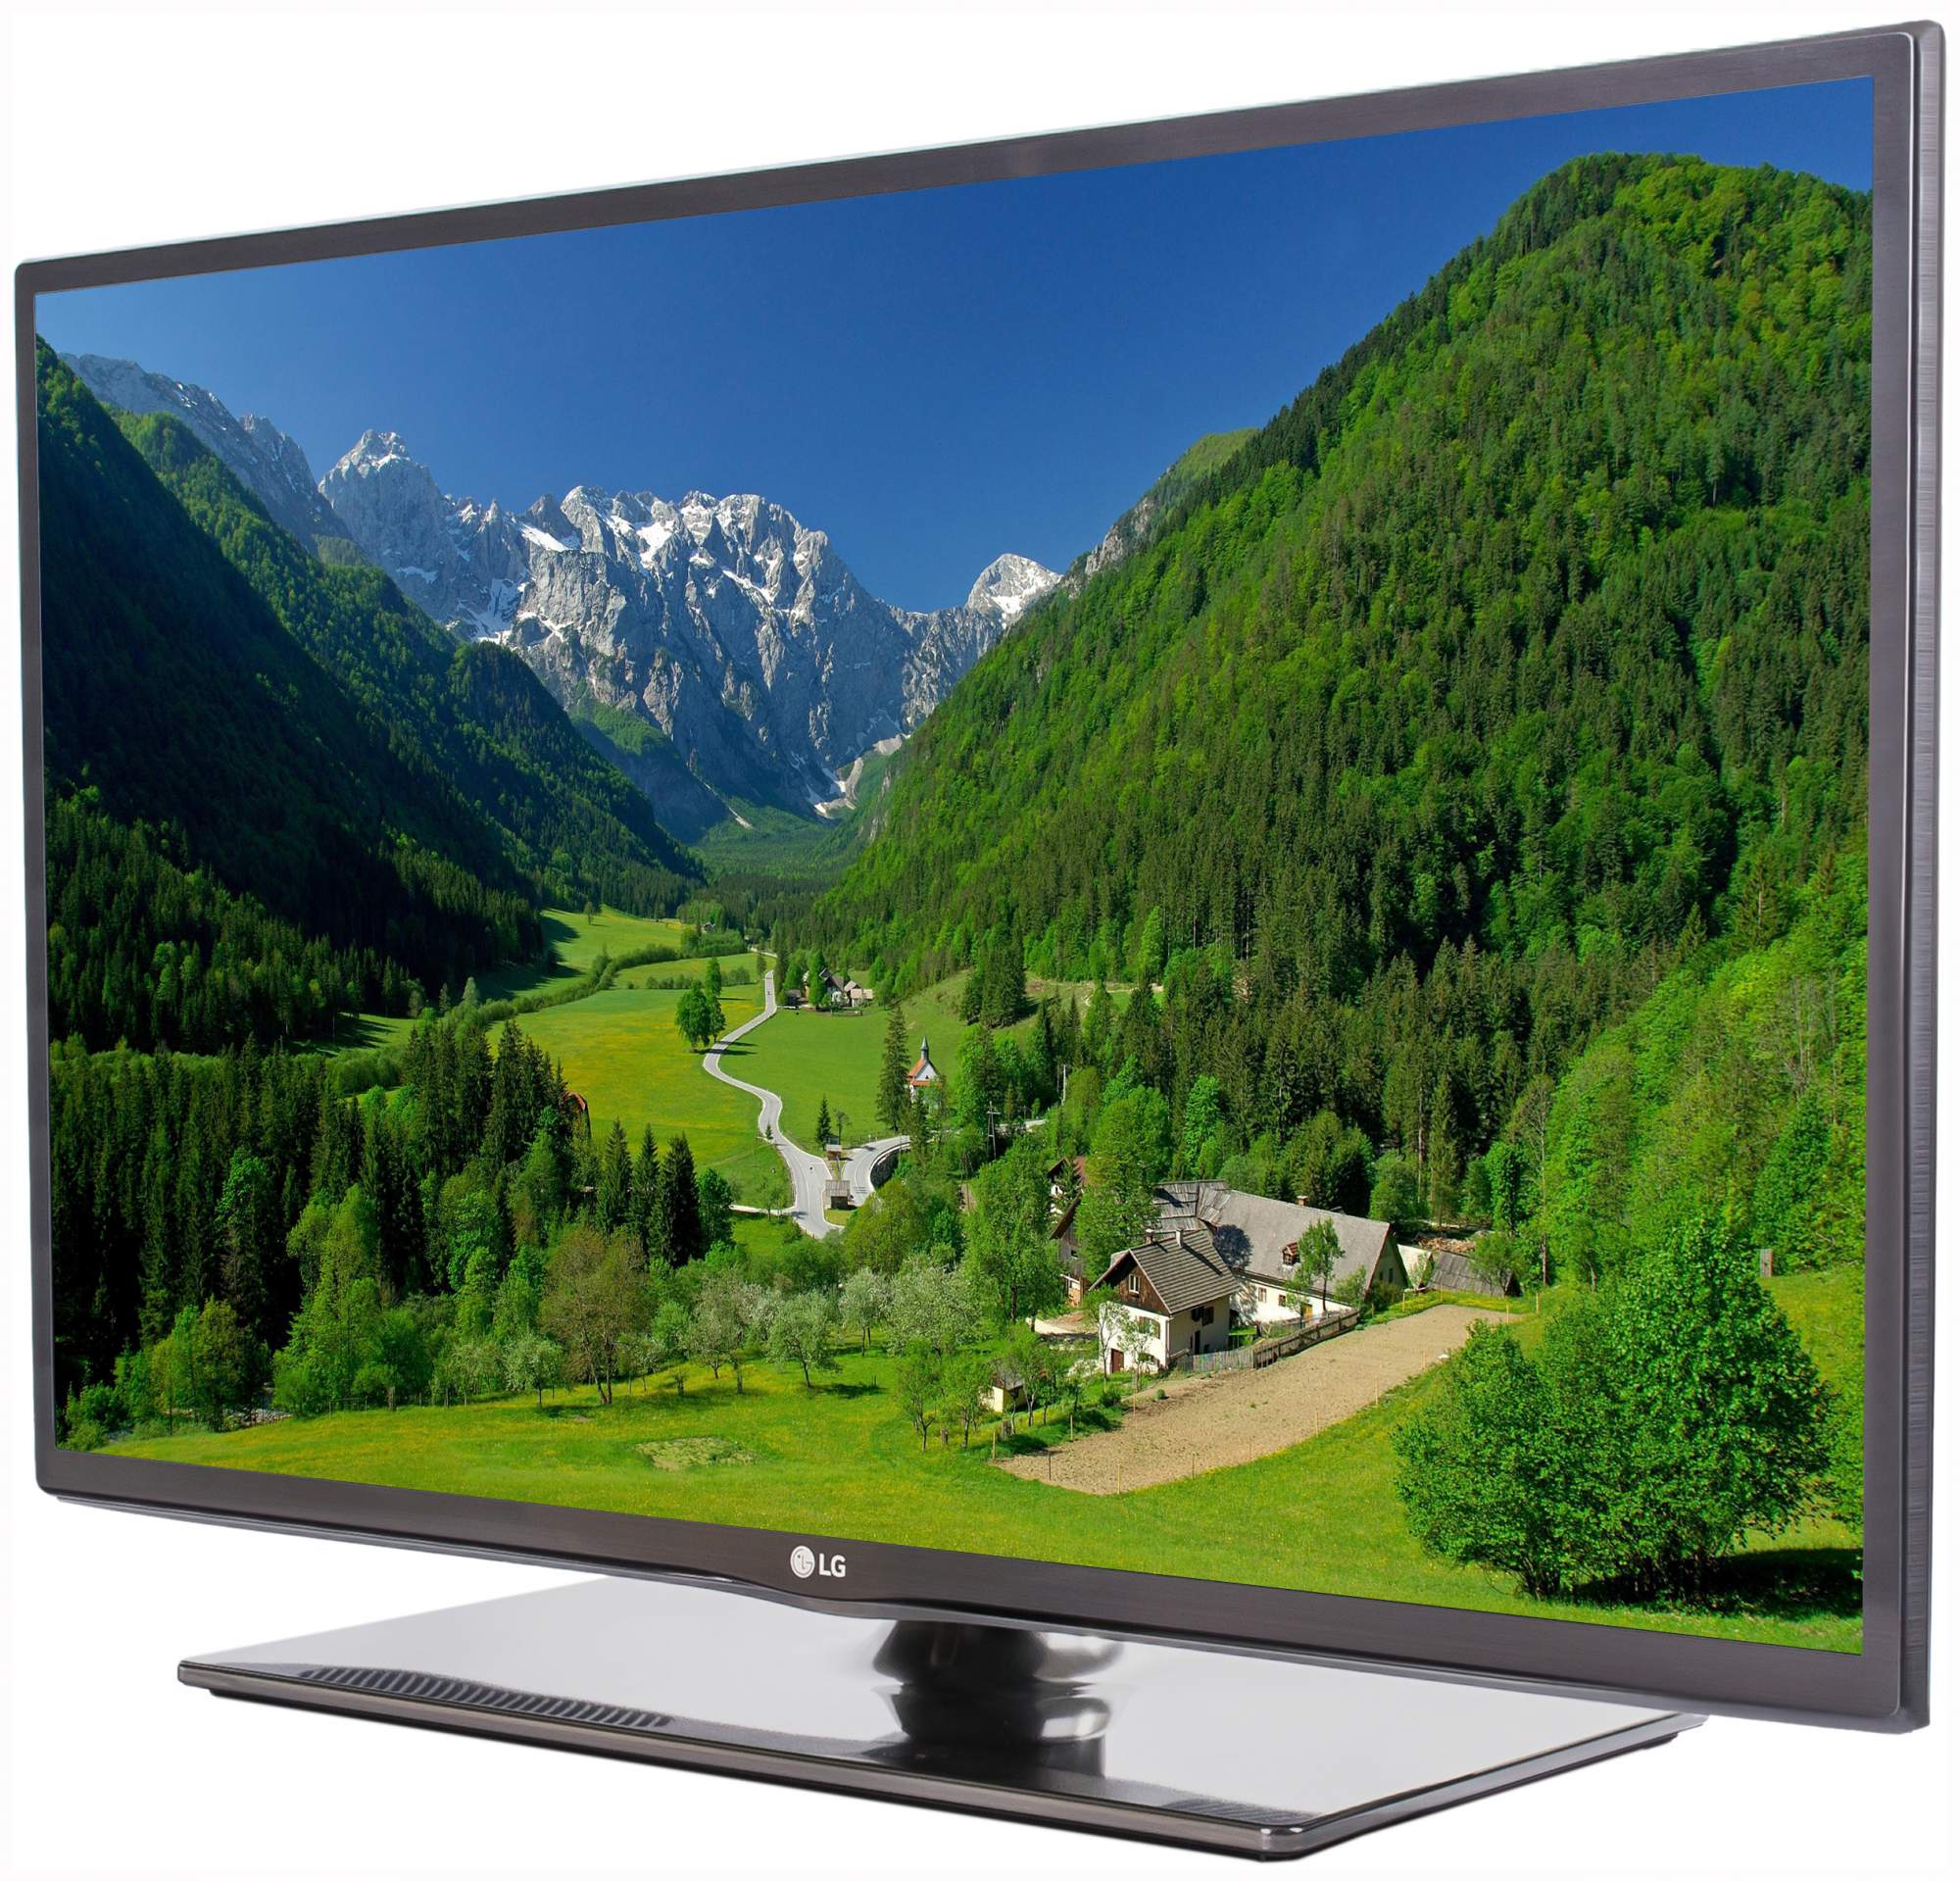 Куплю телевизор 43 дюйма дешево. Lg42 lf650. LG 32lb650v. LG Smart TV 32. Телевизор Лджи 43 дюйма смарт.